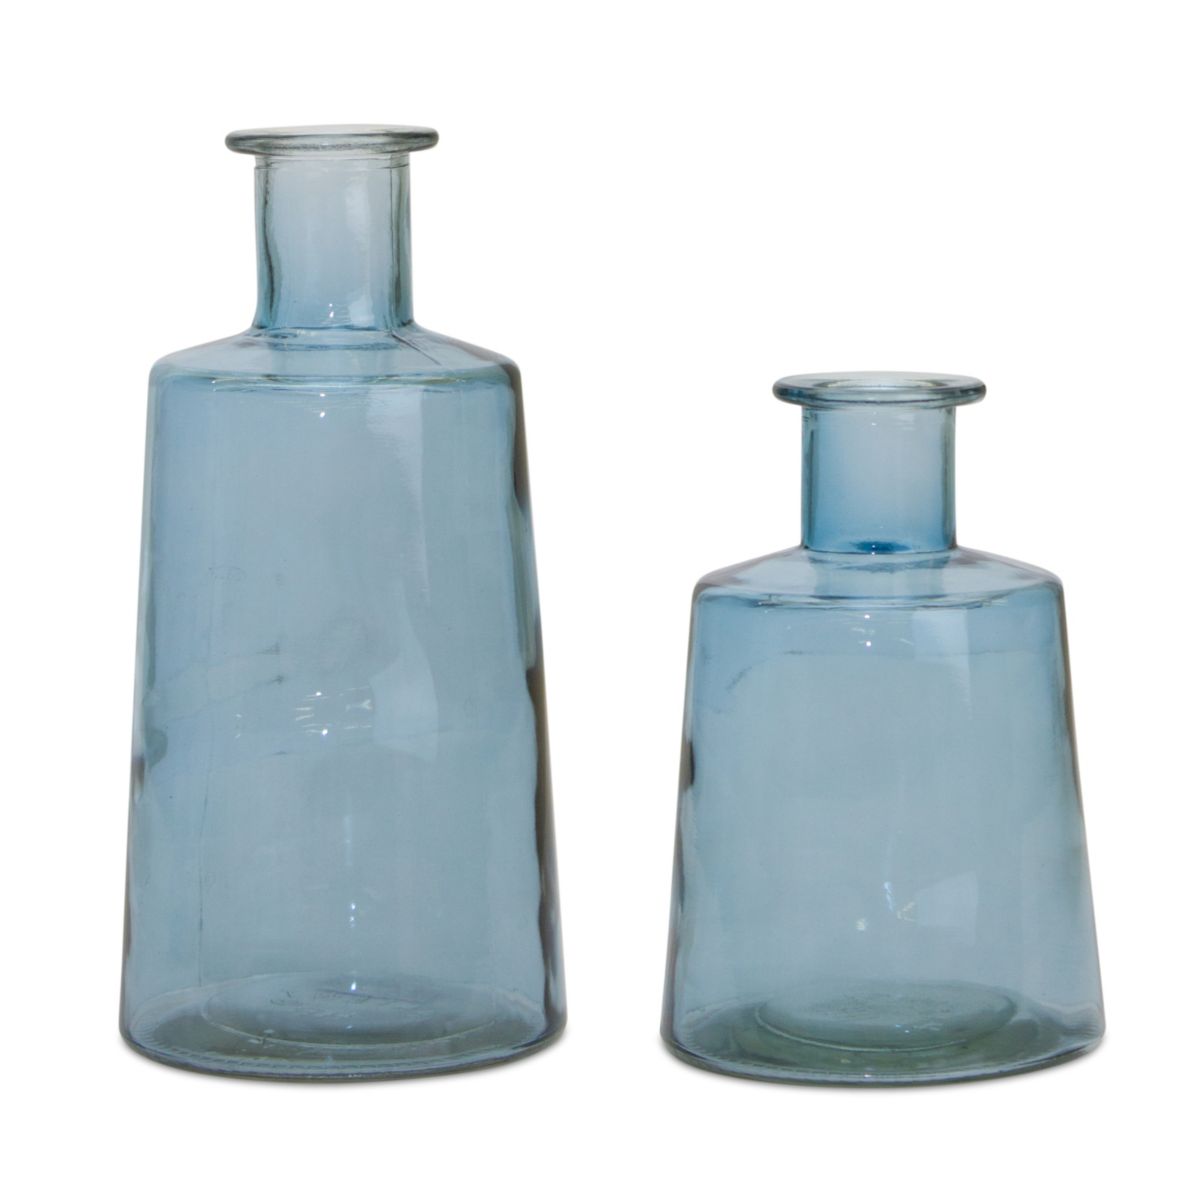 Ваза-конусообразная бутылка из синего стекла Melrose — набор из 2 шт. Melrose